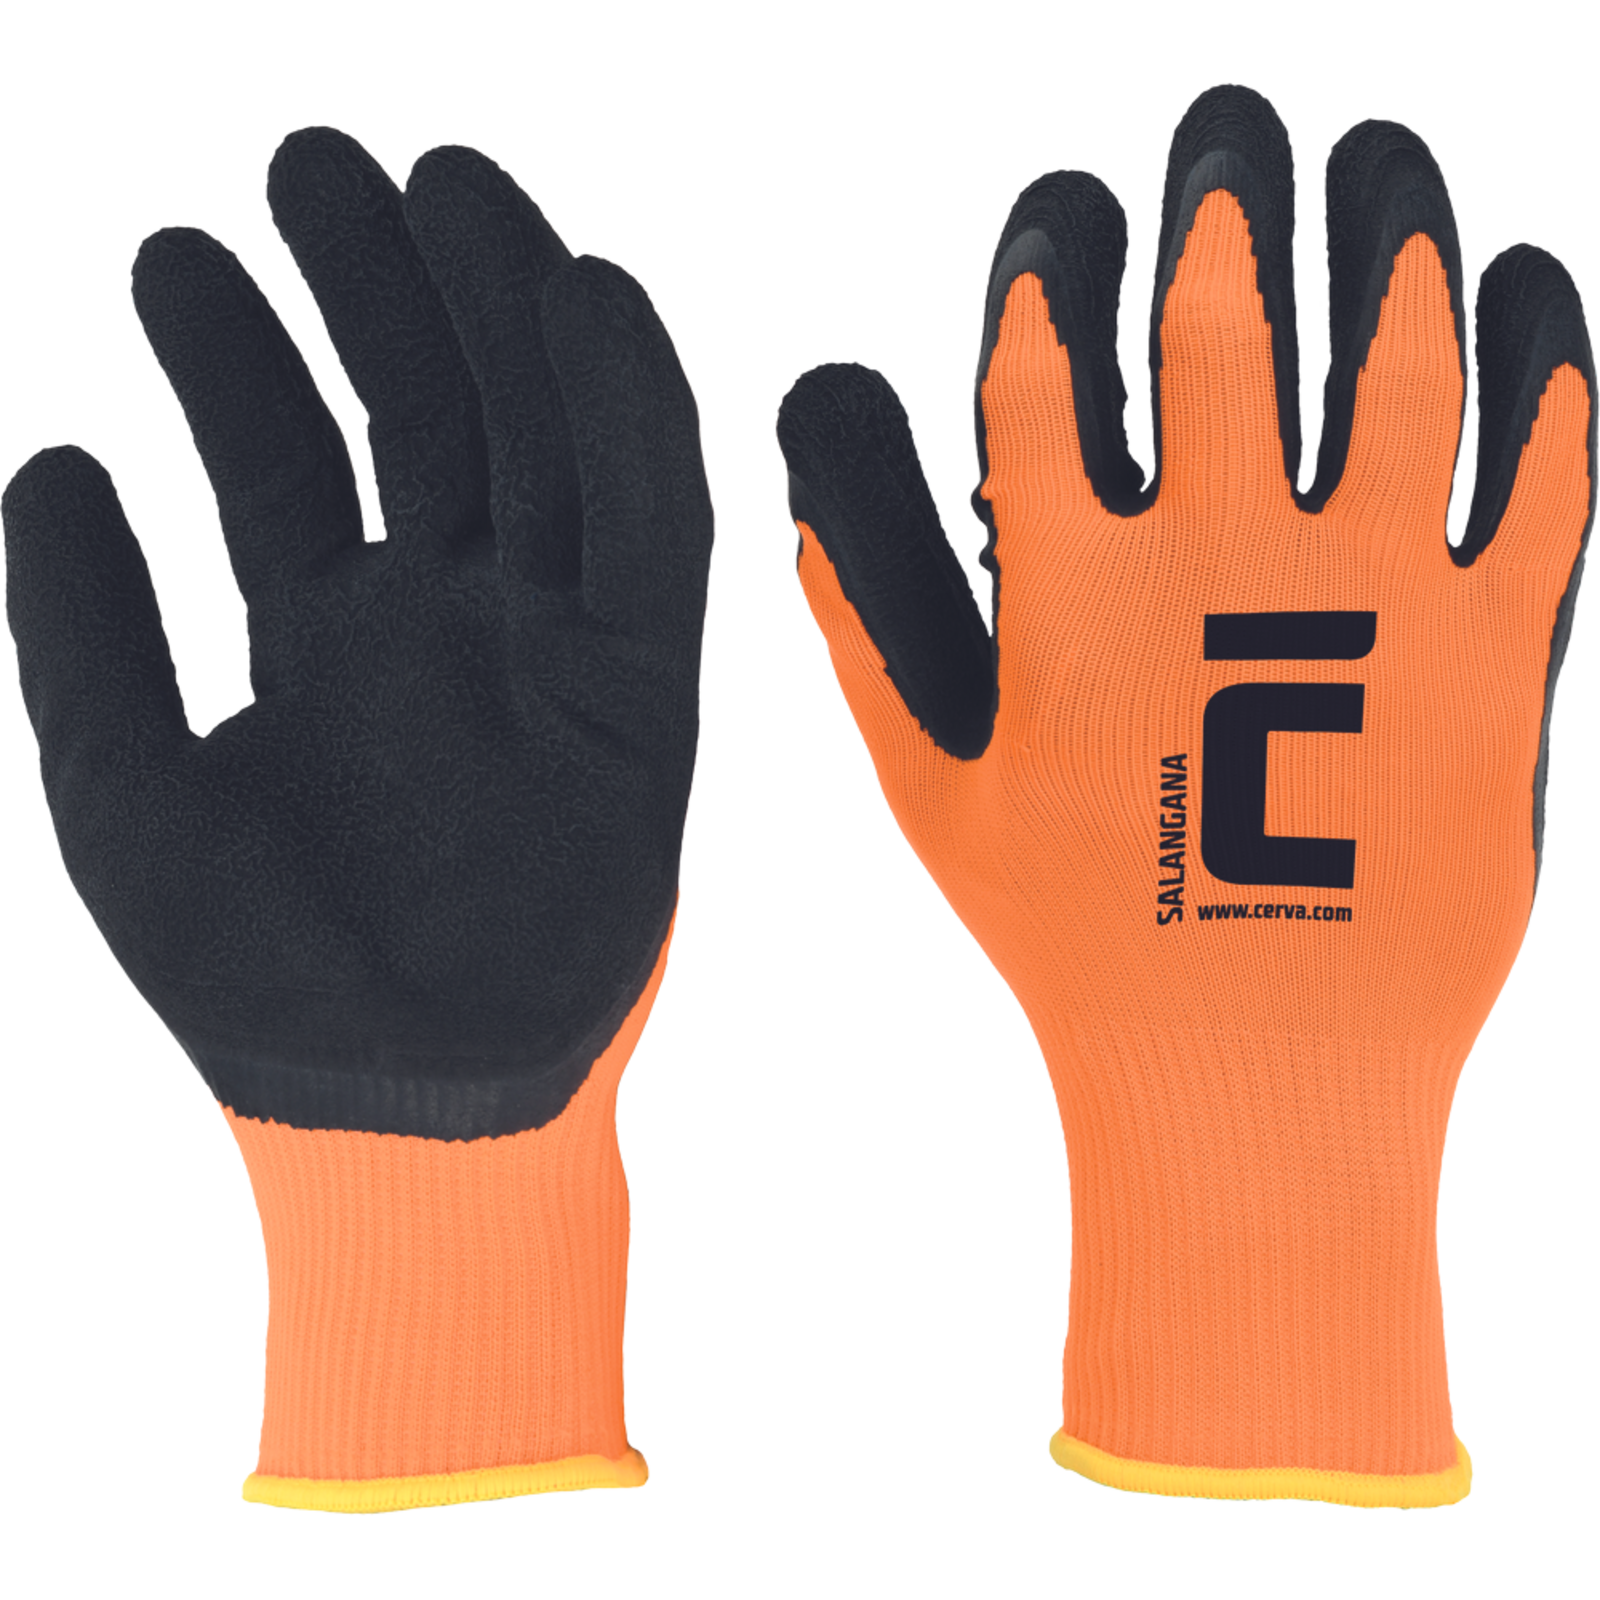 Povrstvené pracovné rukavice Cerva Salangana - veľkosť: 8/M, farba: oranžová